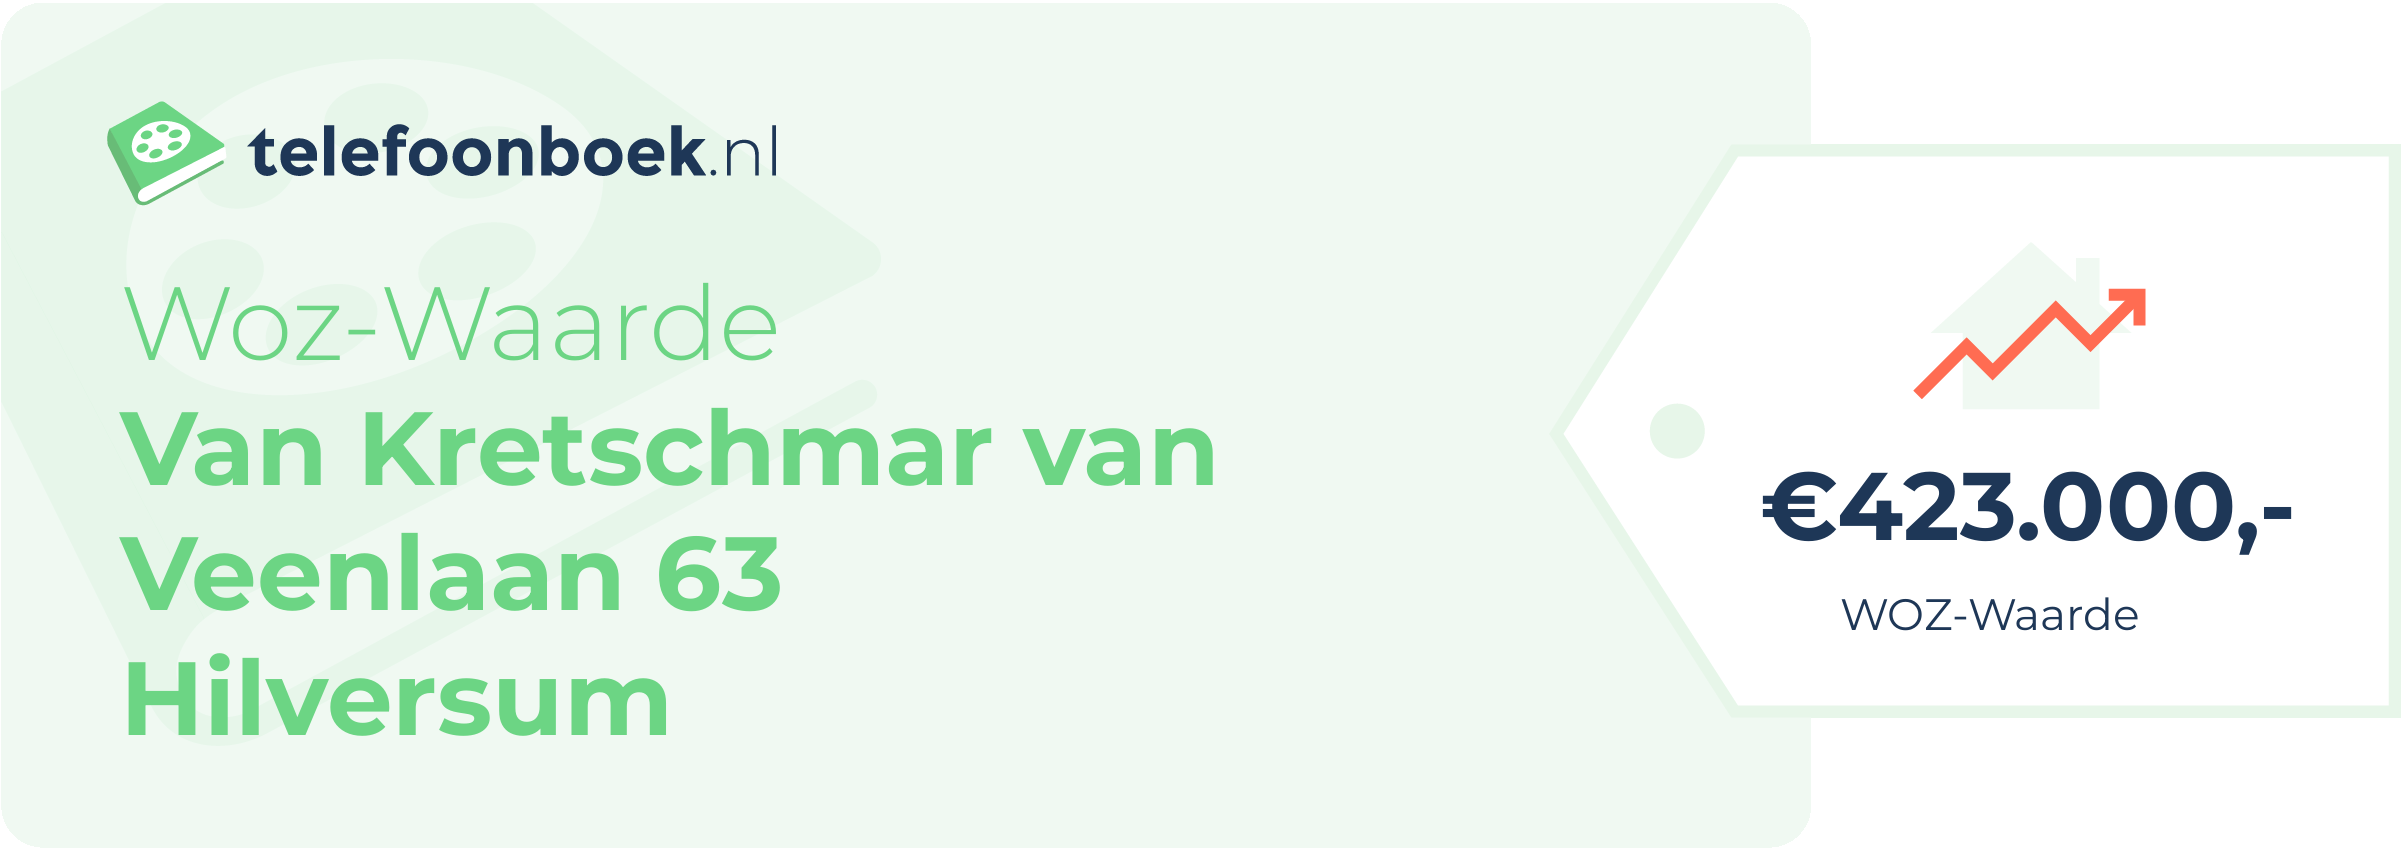 WOZ-waarde Van Kretschmar Van Veenlaan 63 Hilversum